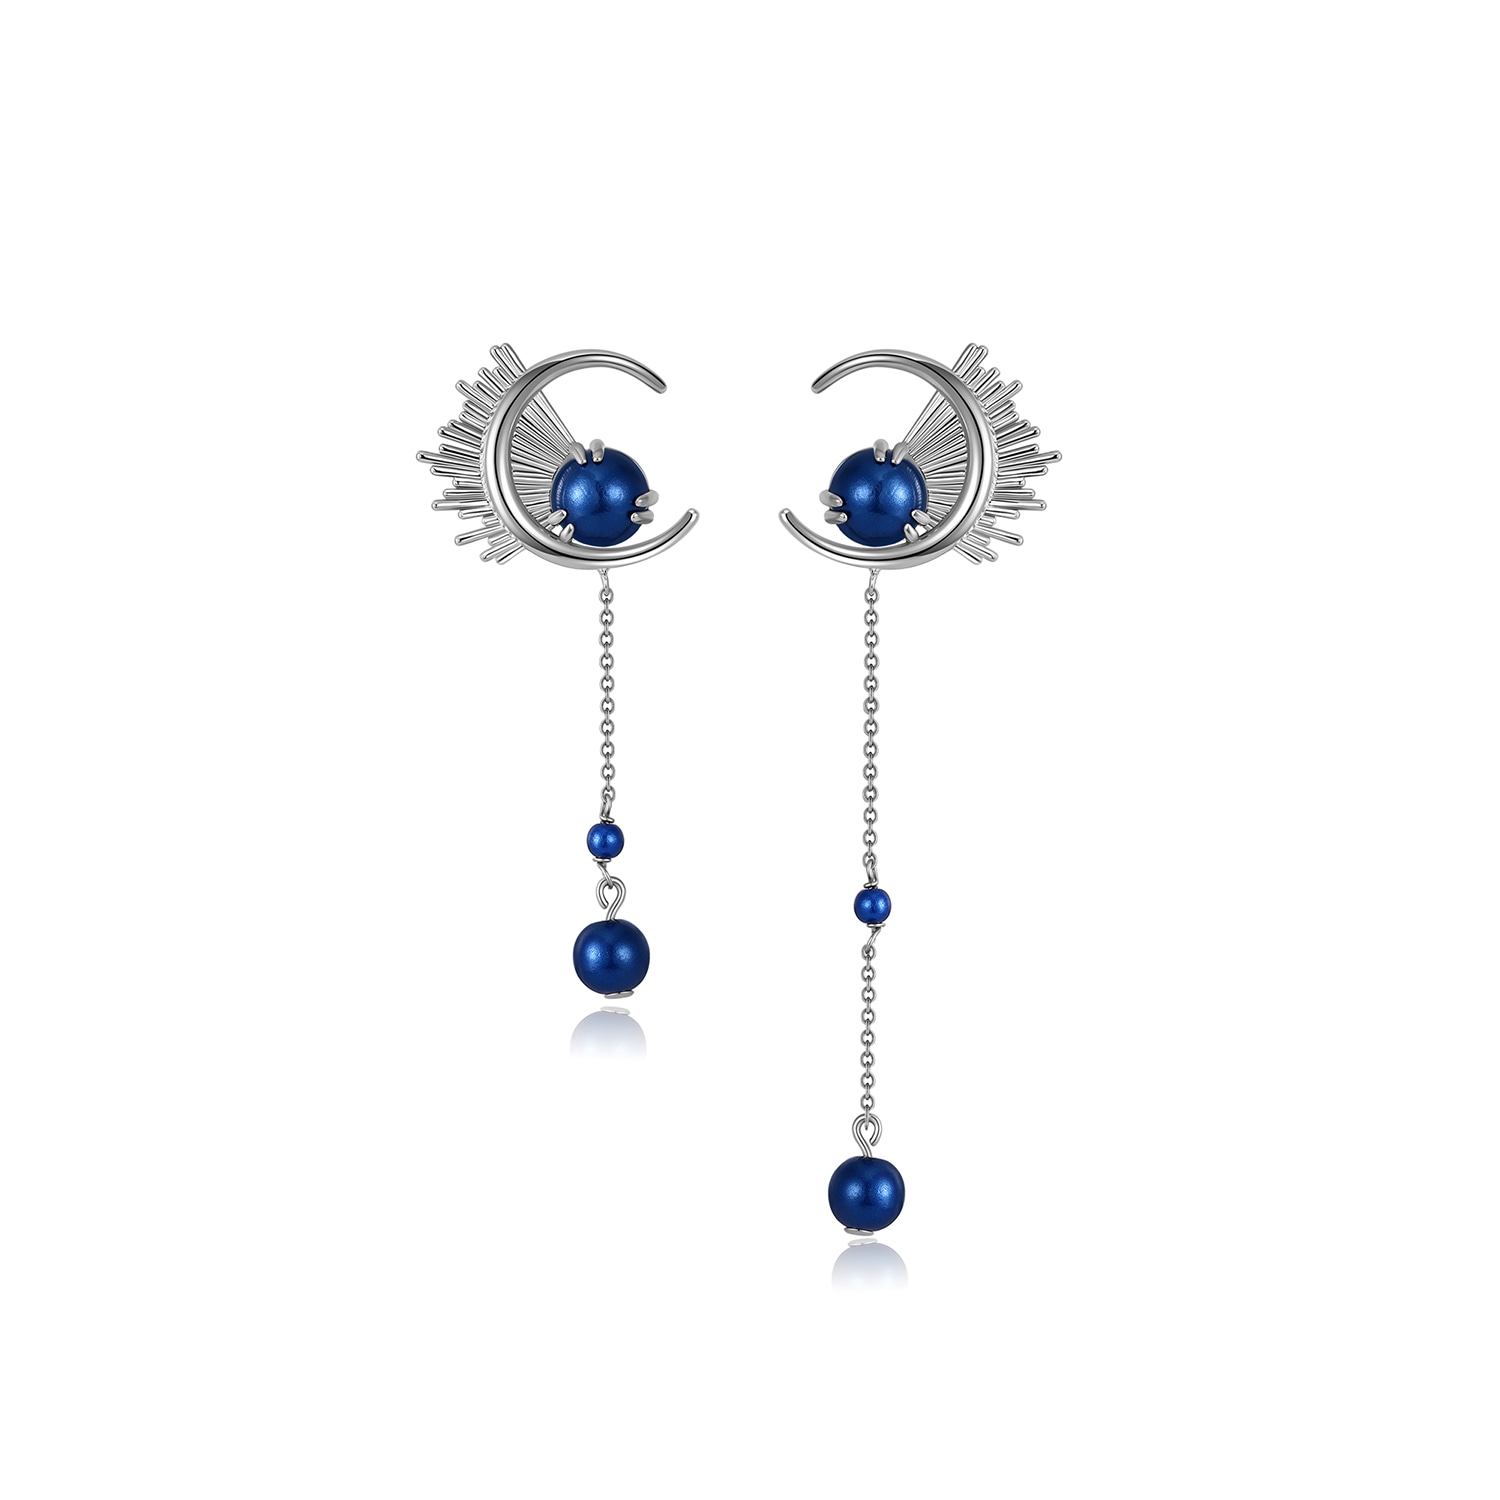 Women’s Silver / Blue Blue Dandelion Earrings Retro Chic